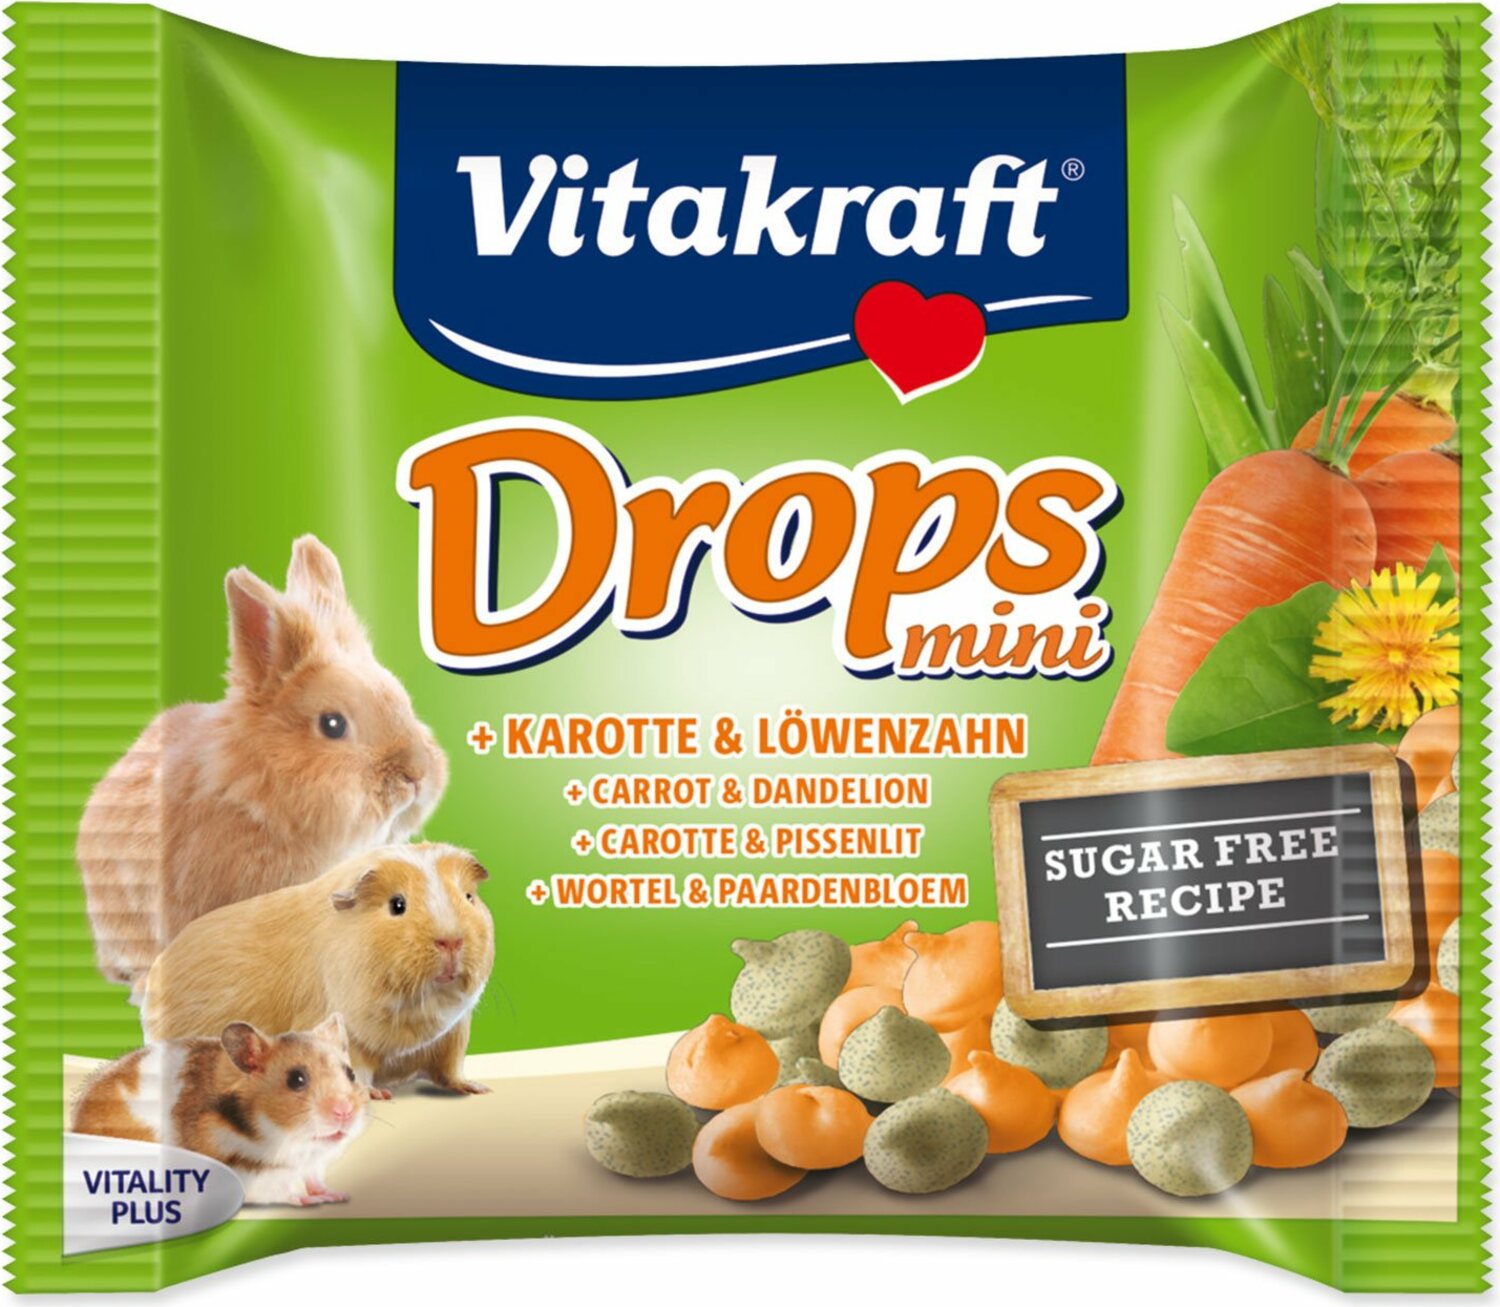 Pochoutka Vitakraft Happy králík, s mrkví, dropsy 40g